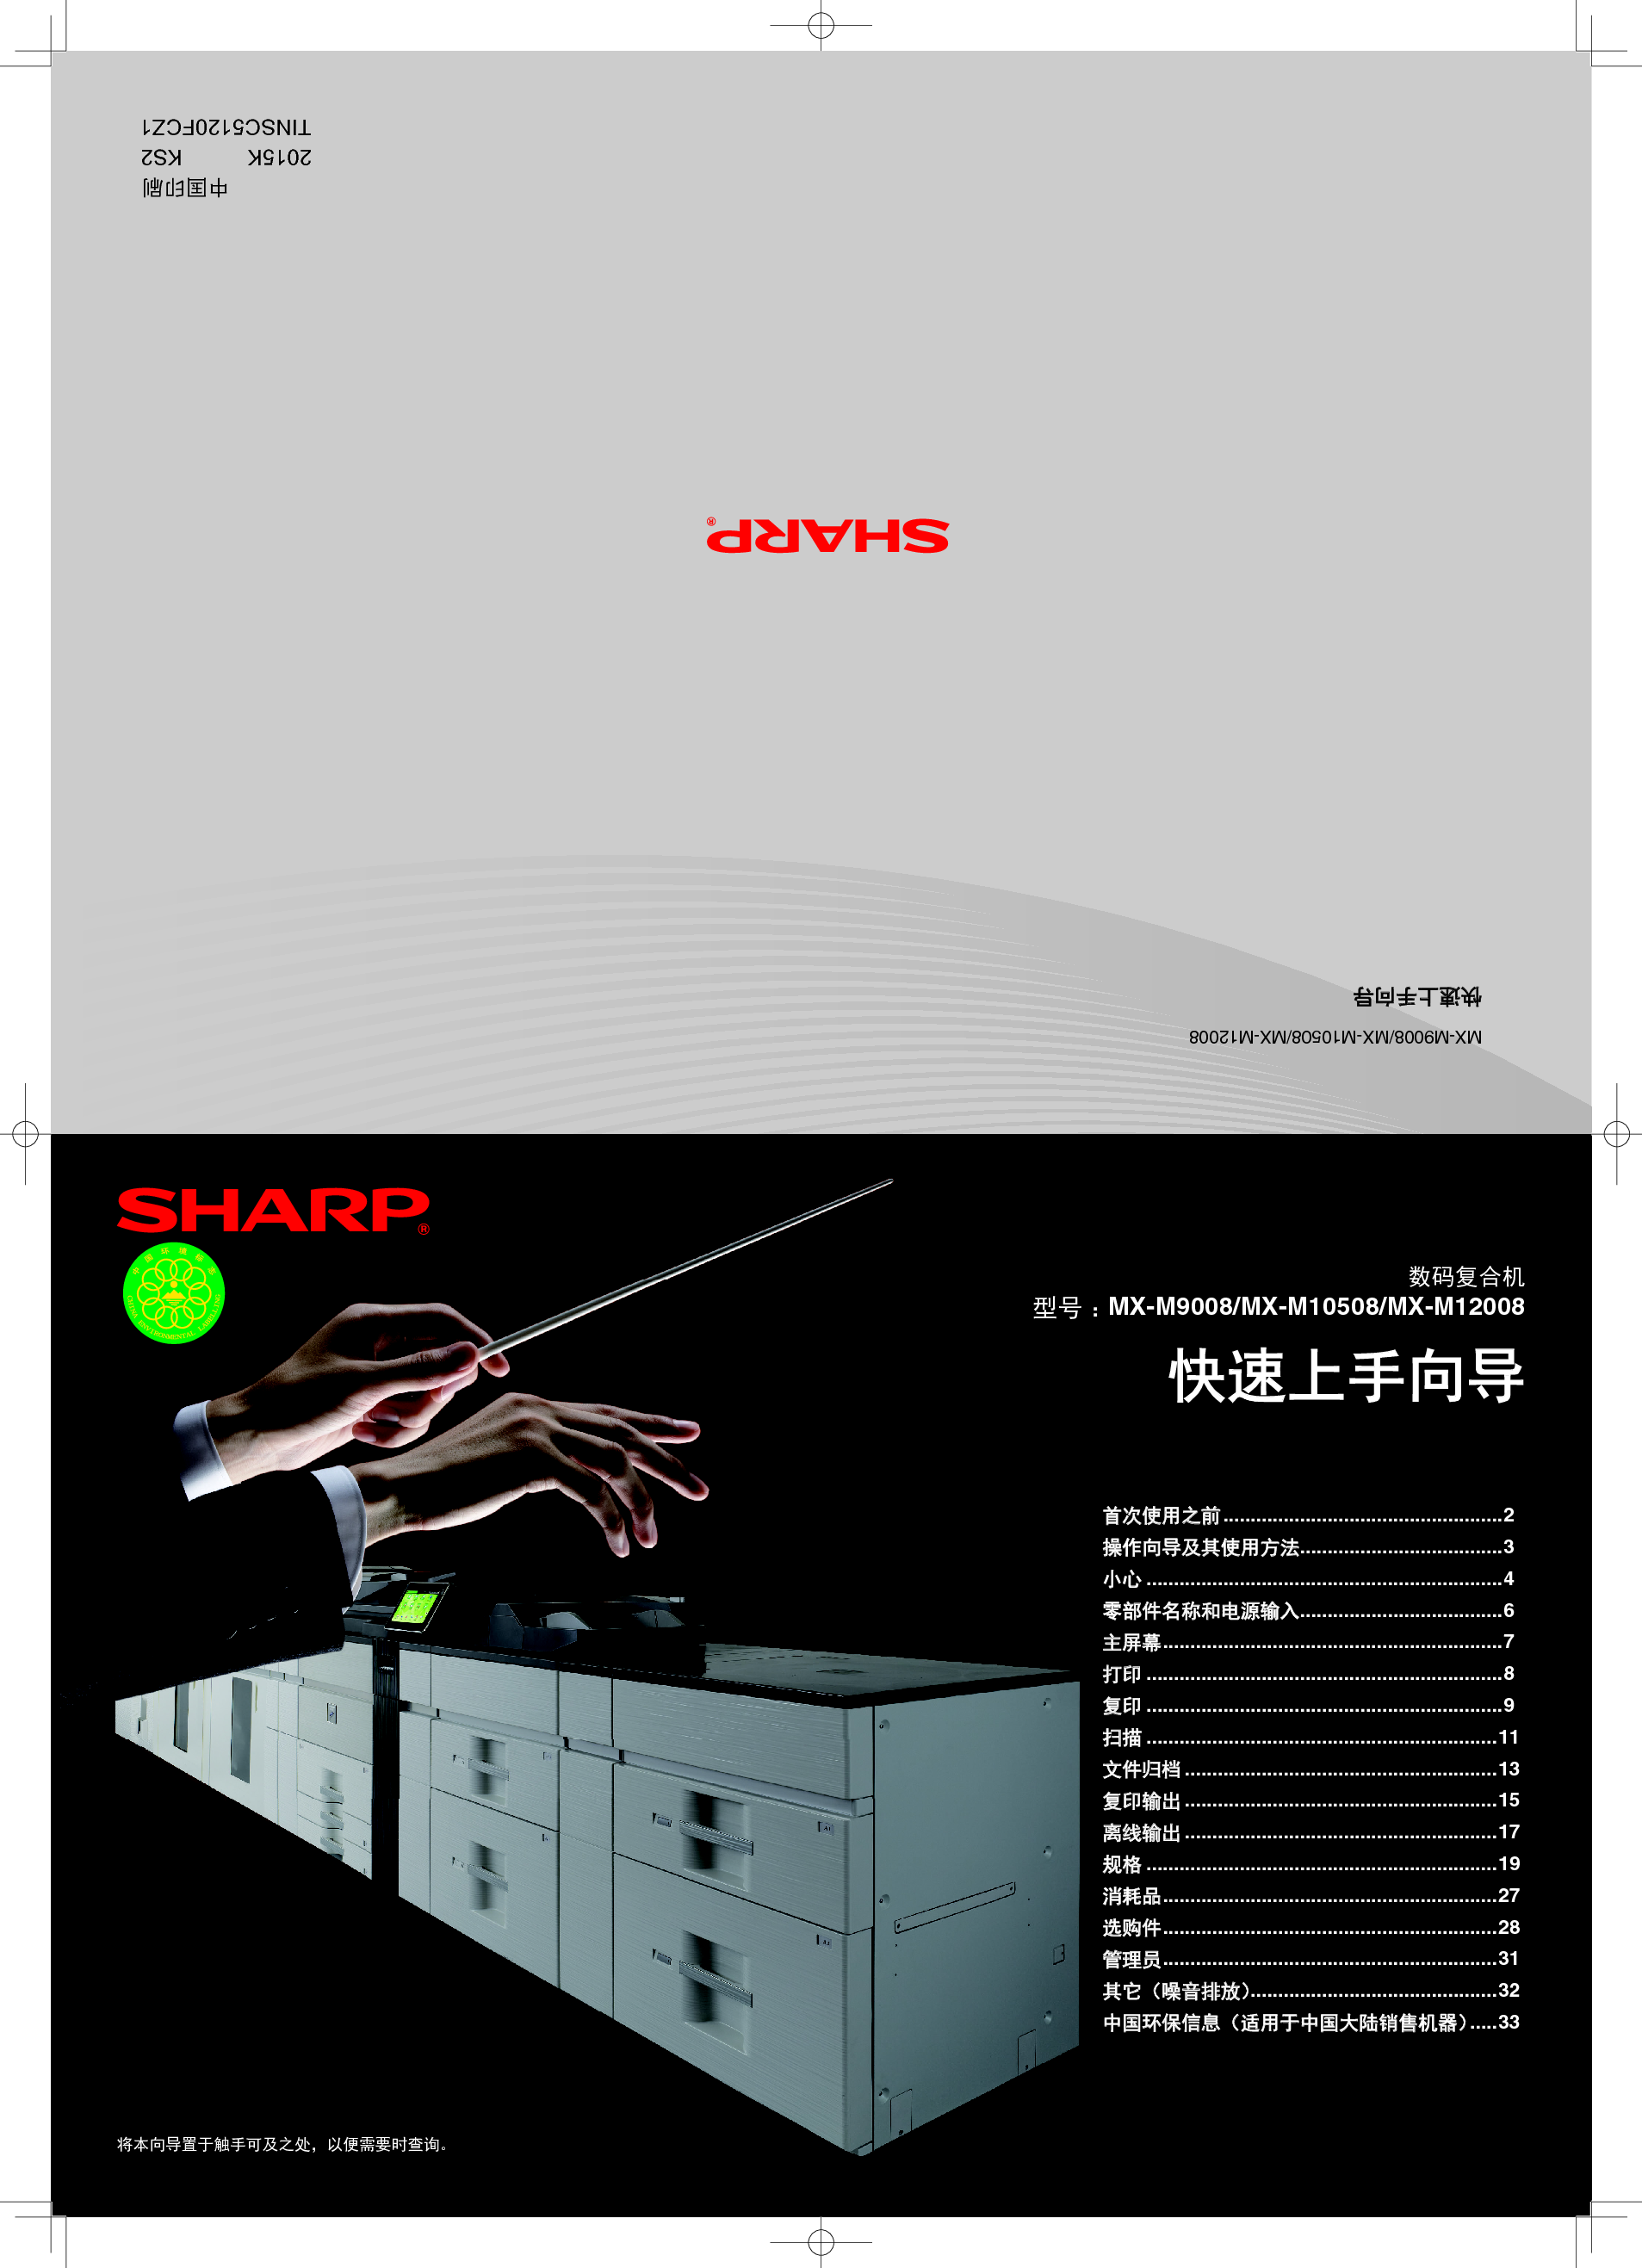 夏普 Sharp MX-M9008 入门 操作手册 封面